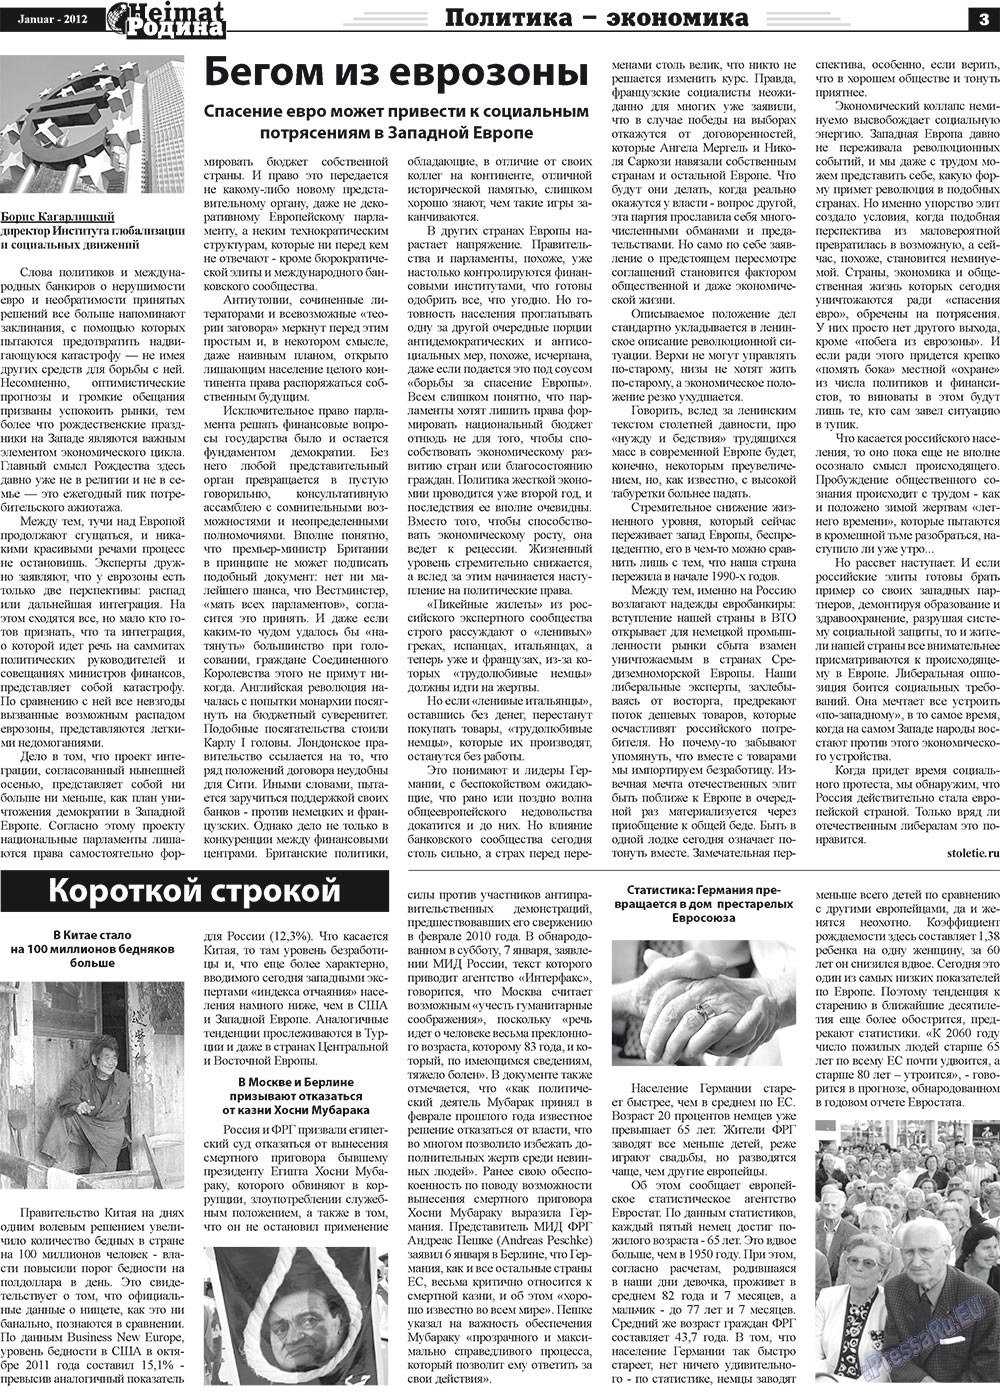 Heimat-Родина (газета). 2012 год, номер 1, стр. 3